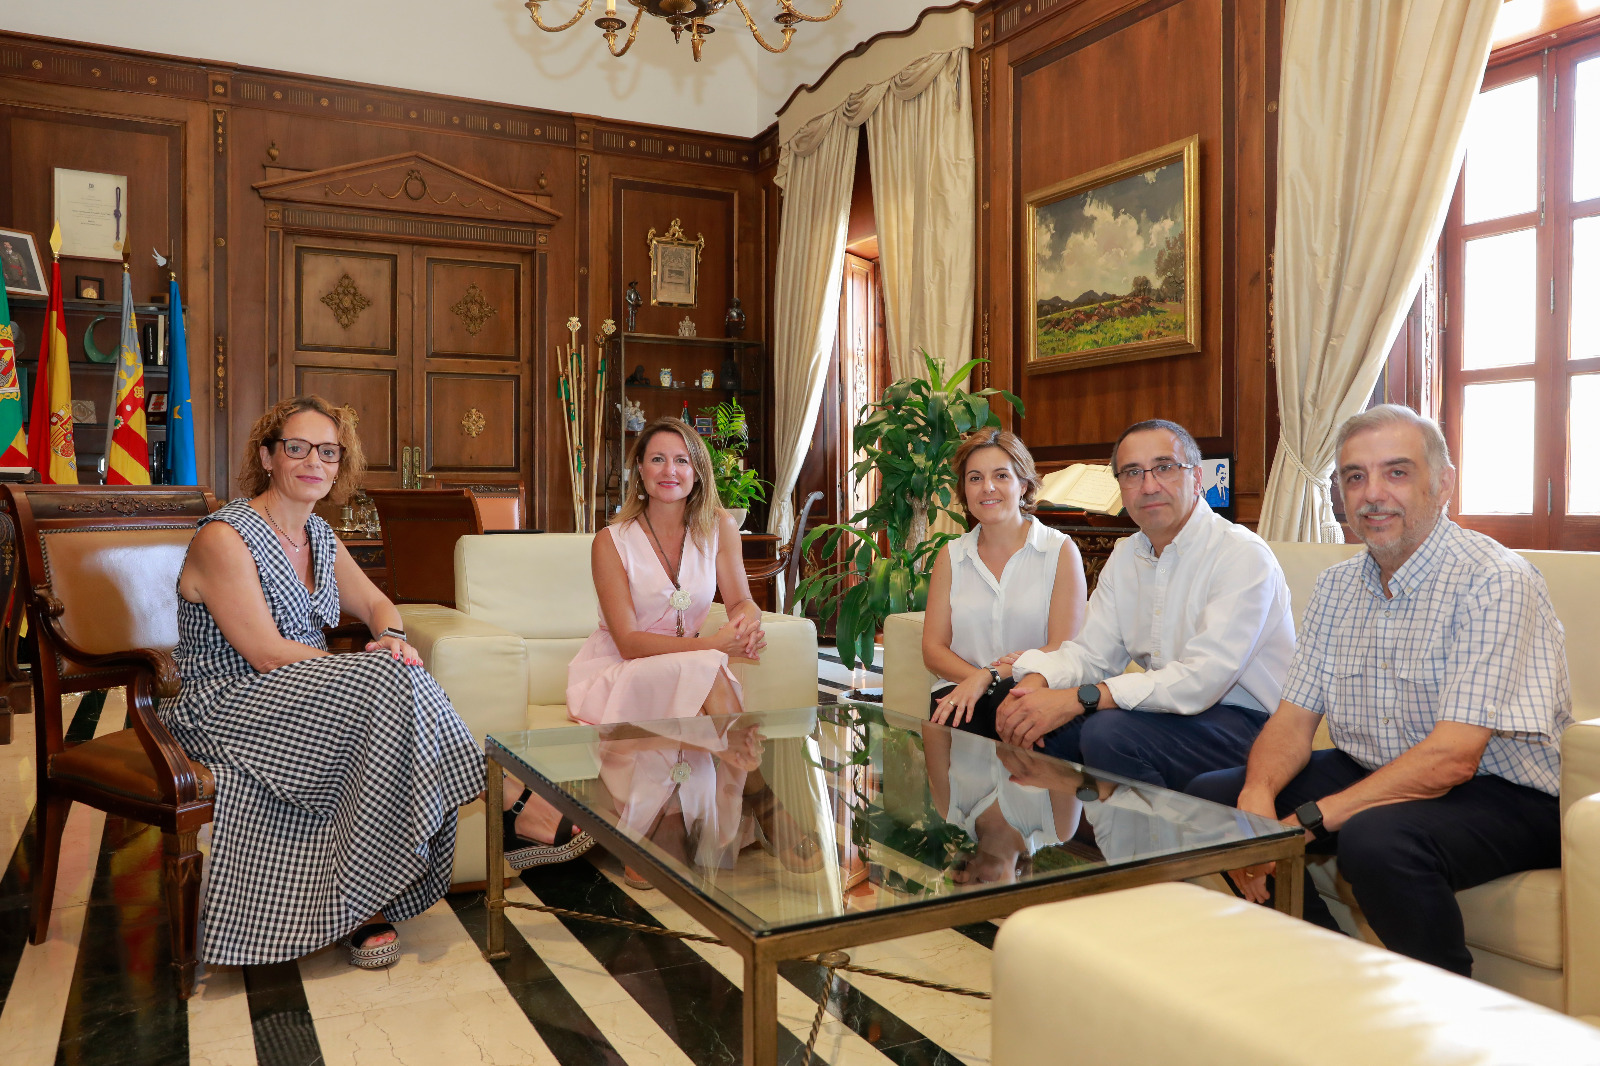 L'alcaldessa enalteix el treball de la Junta de Festes als membres de la qual reconeix la seua dedicació altruista per mantindre viu Castelló i les seues tradicions